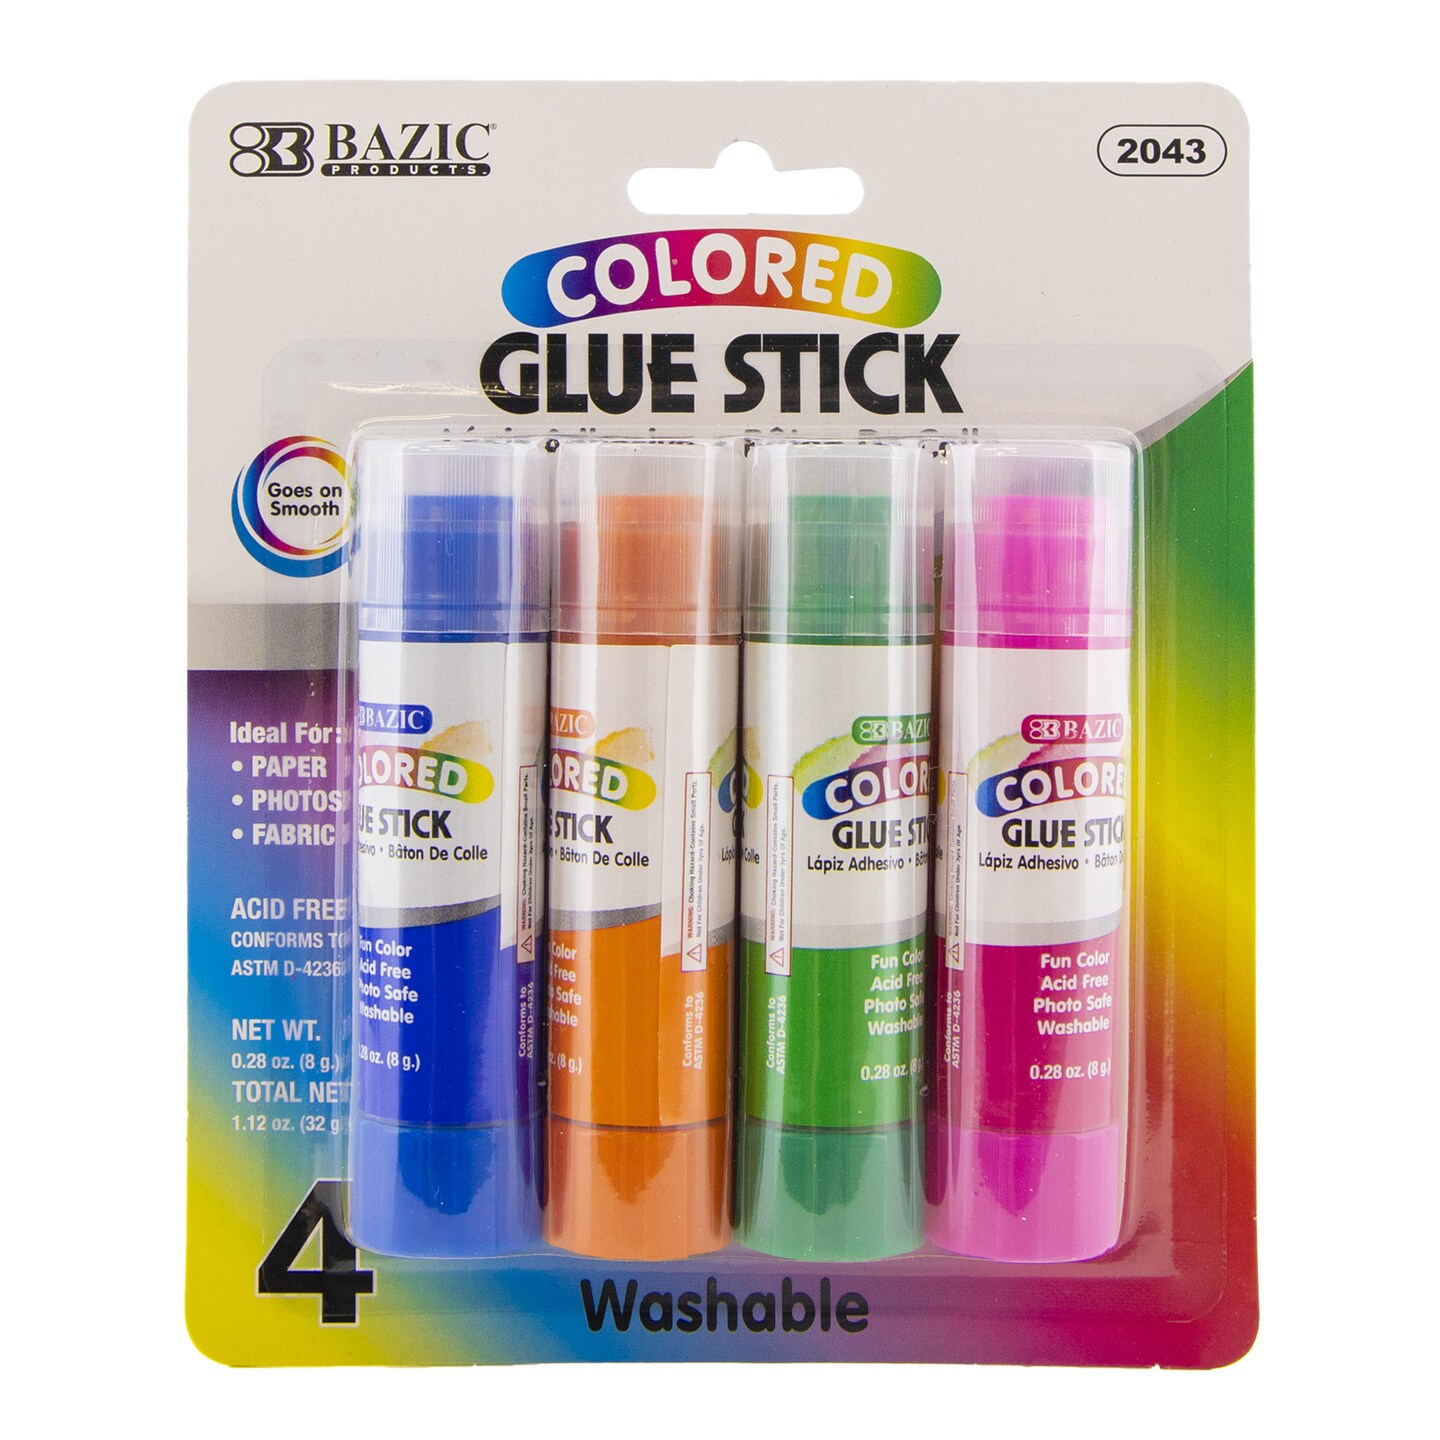 BAZIC Glue Stick Washable 4 Colored 0.28 oz (8g)